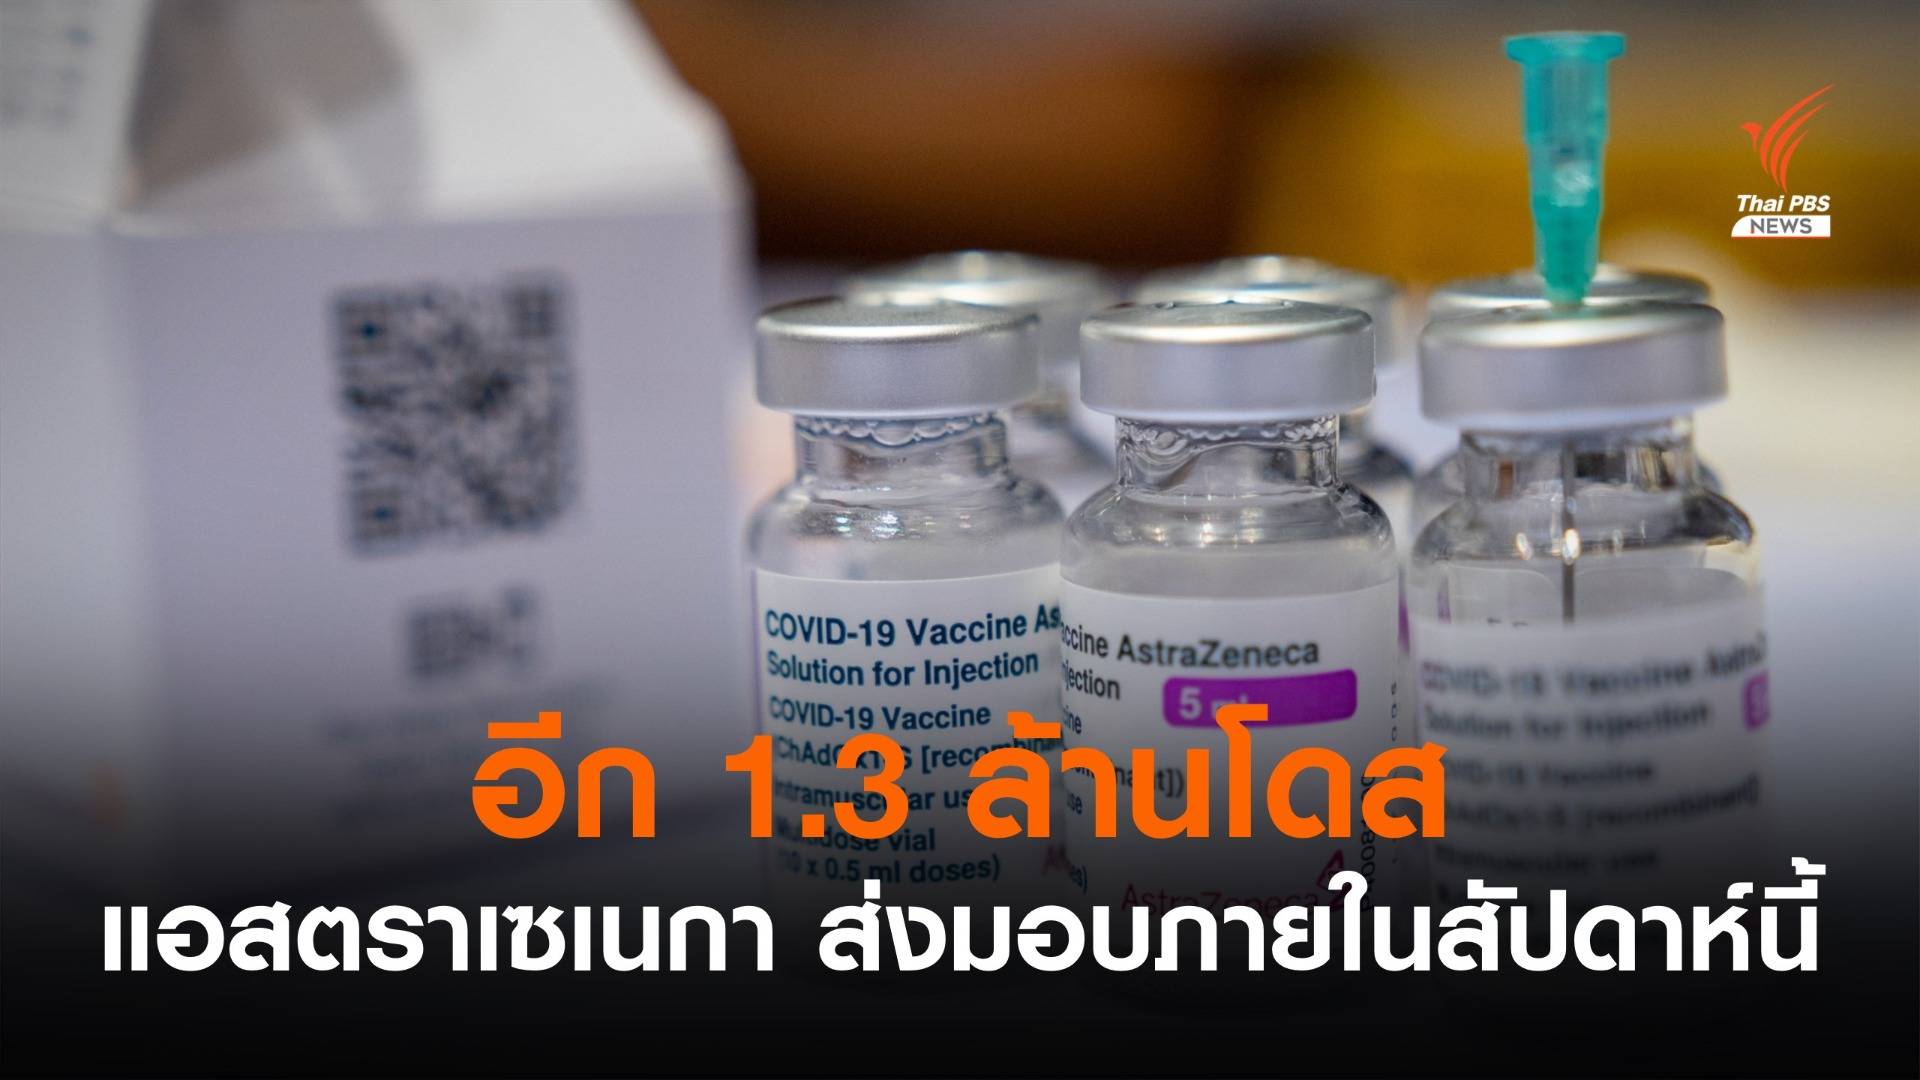 ส่งมอบวัคซีน "แอสตราเซเนกา" อีก 1.3 ล้านโดสให้ไทยสัปดาห์นี้ 